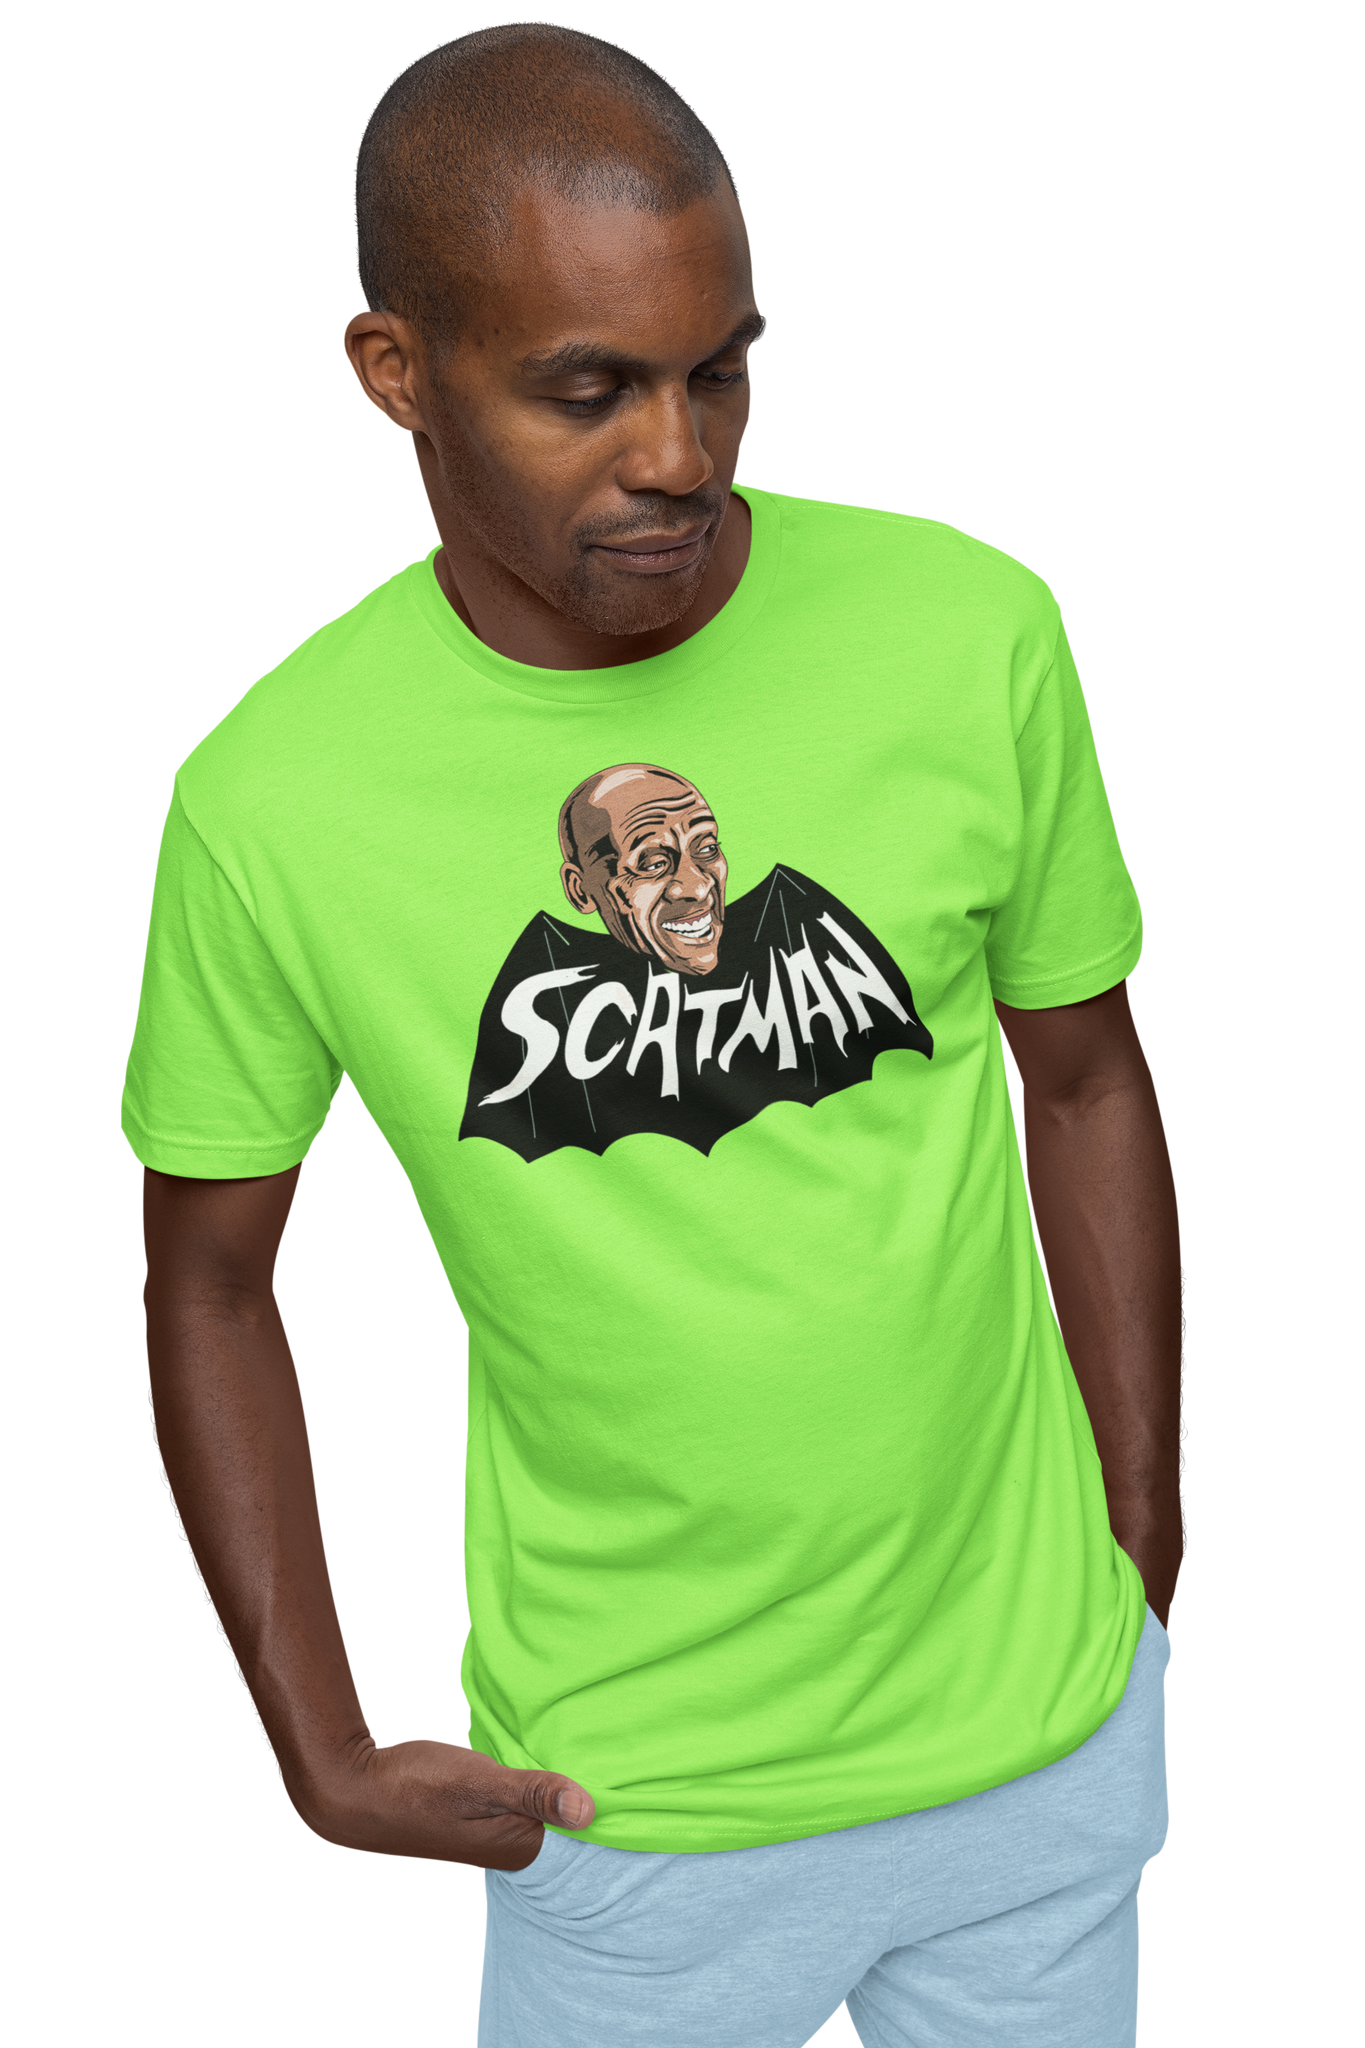 ATOM AGE - "SCATMAN" GREEN T-SHIRT (ART BY JEFF BRAWN)